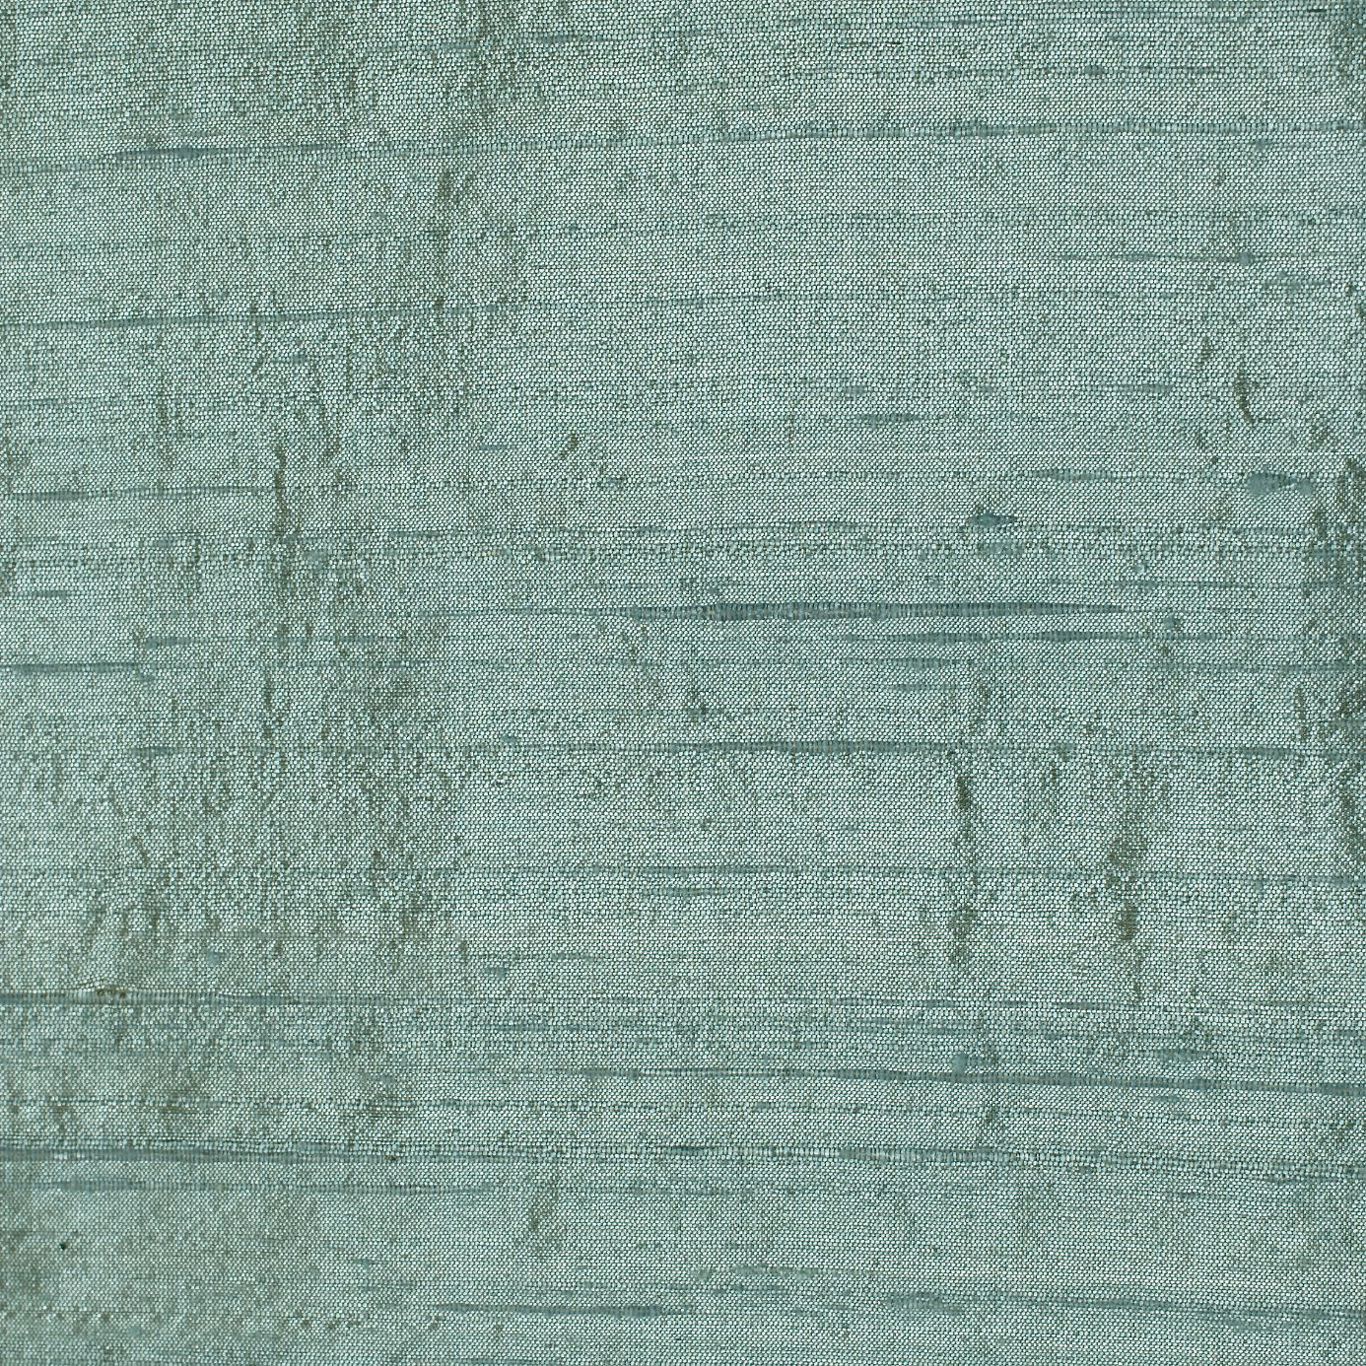 Lilaea Silks Aqua Fabric by HAR